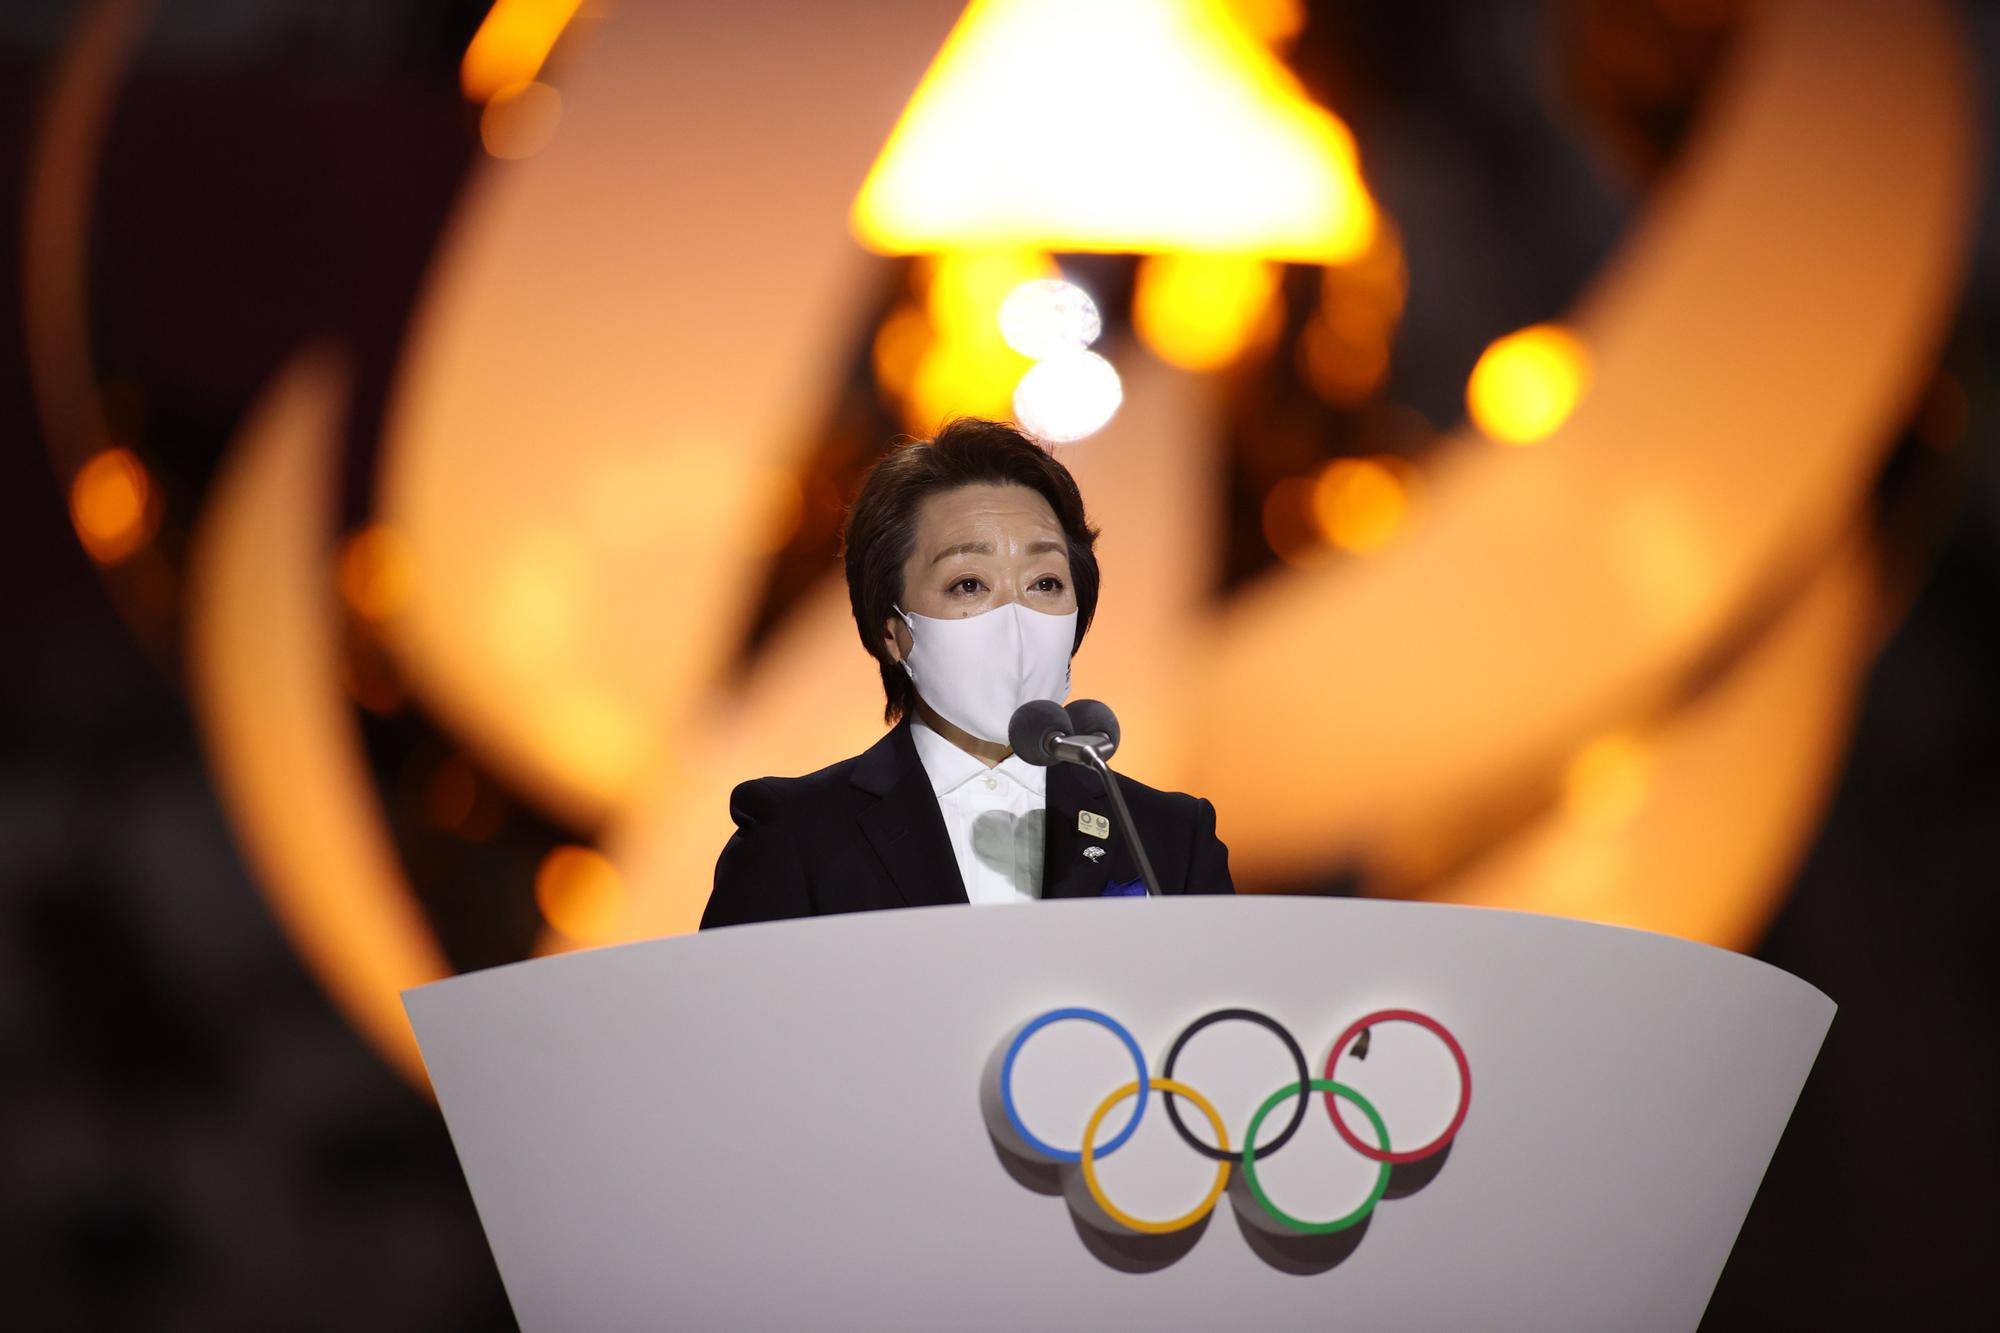 Ceremonia de clausura de los Juegos Olímpicos de Tokio 2020